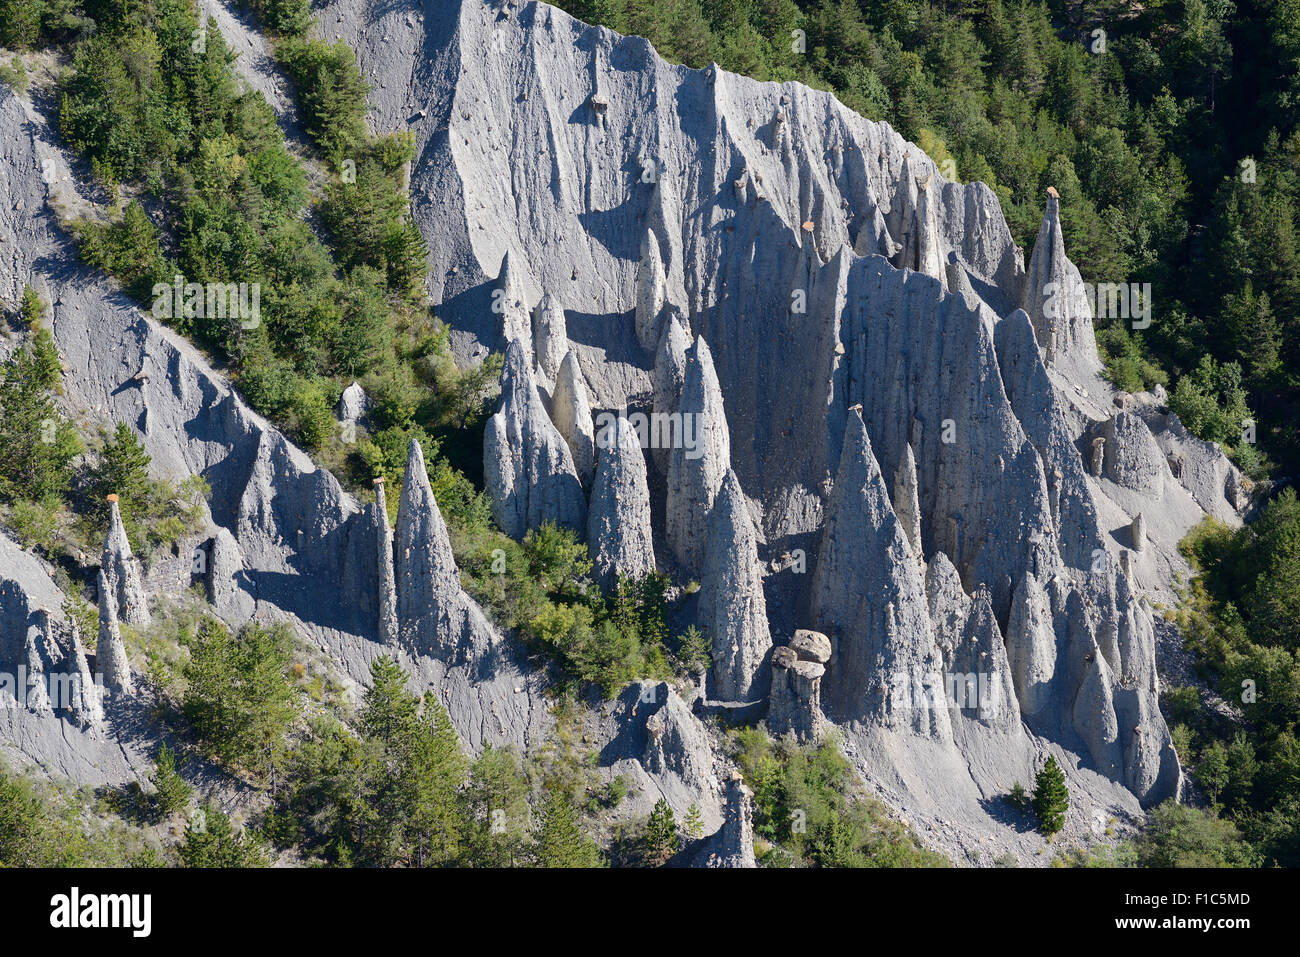 LUFTAUFNAHME. Geologische Neugier bekannt als demoiselles coiffées (Hoodoos) in der Nähe des Sees Serre-Ponçon. Théus, Hautes-Alpes, Frankreich. Stockfoto